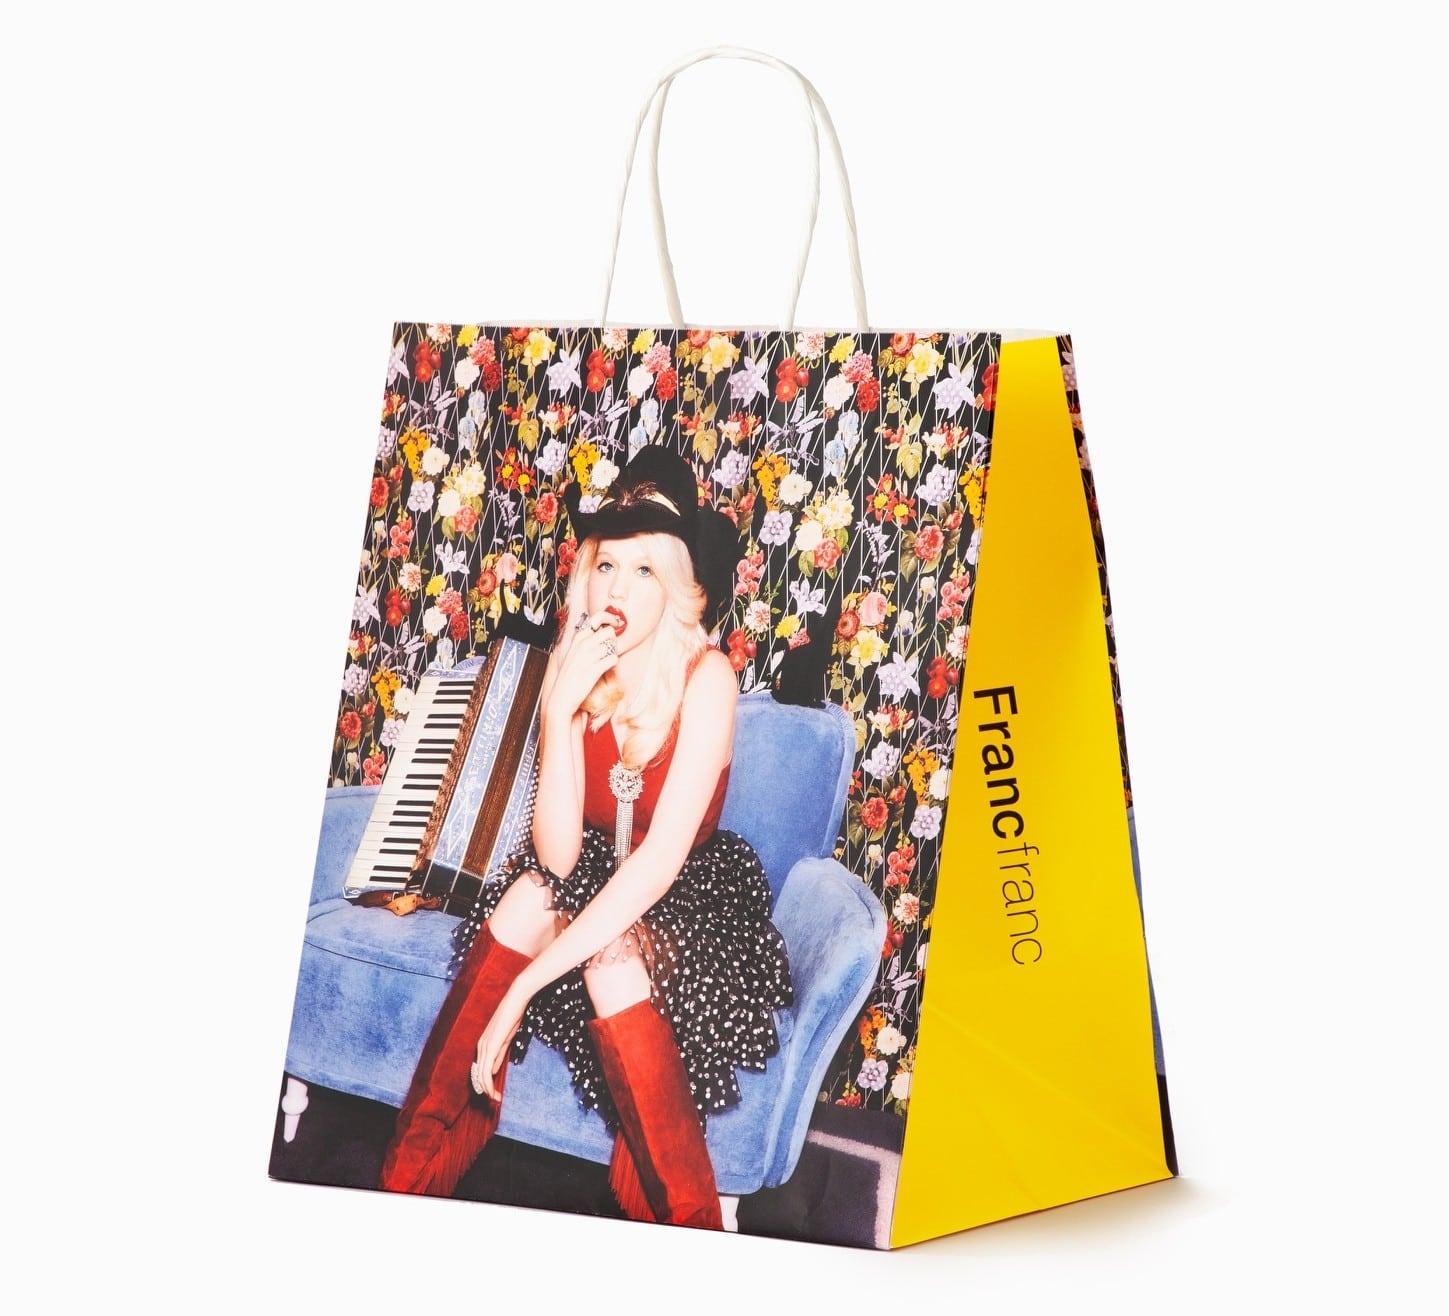 Francfranc の買い物袋が あの女性写真家のガーリー写真になるっ 今月から オトコが好きなファッション ライターの本音トーク Blog Madame Figaro Jp フィガロジャポン